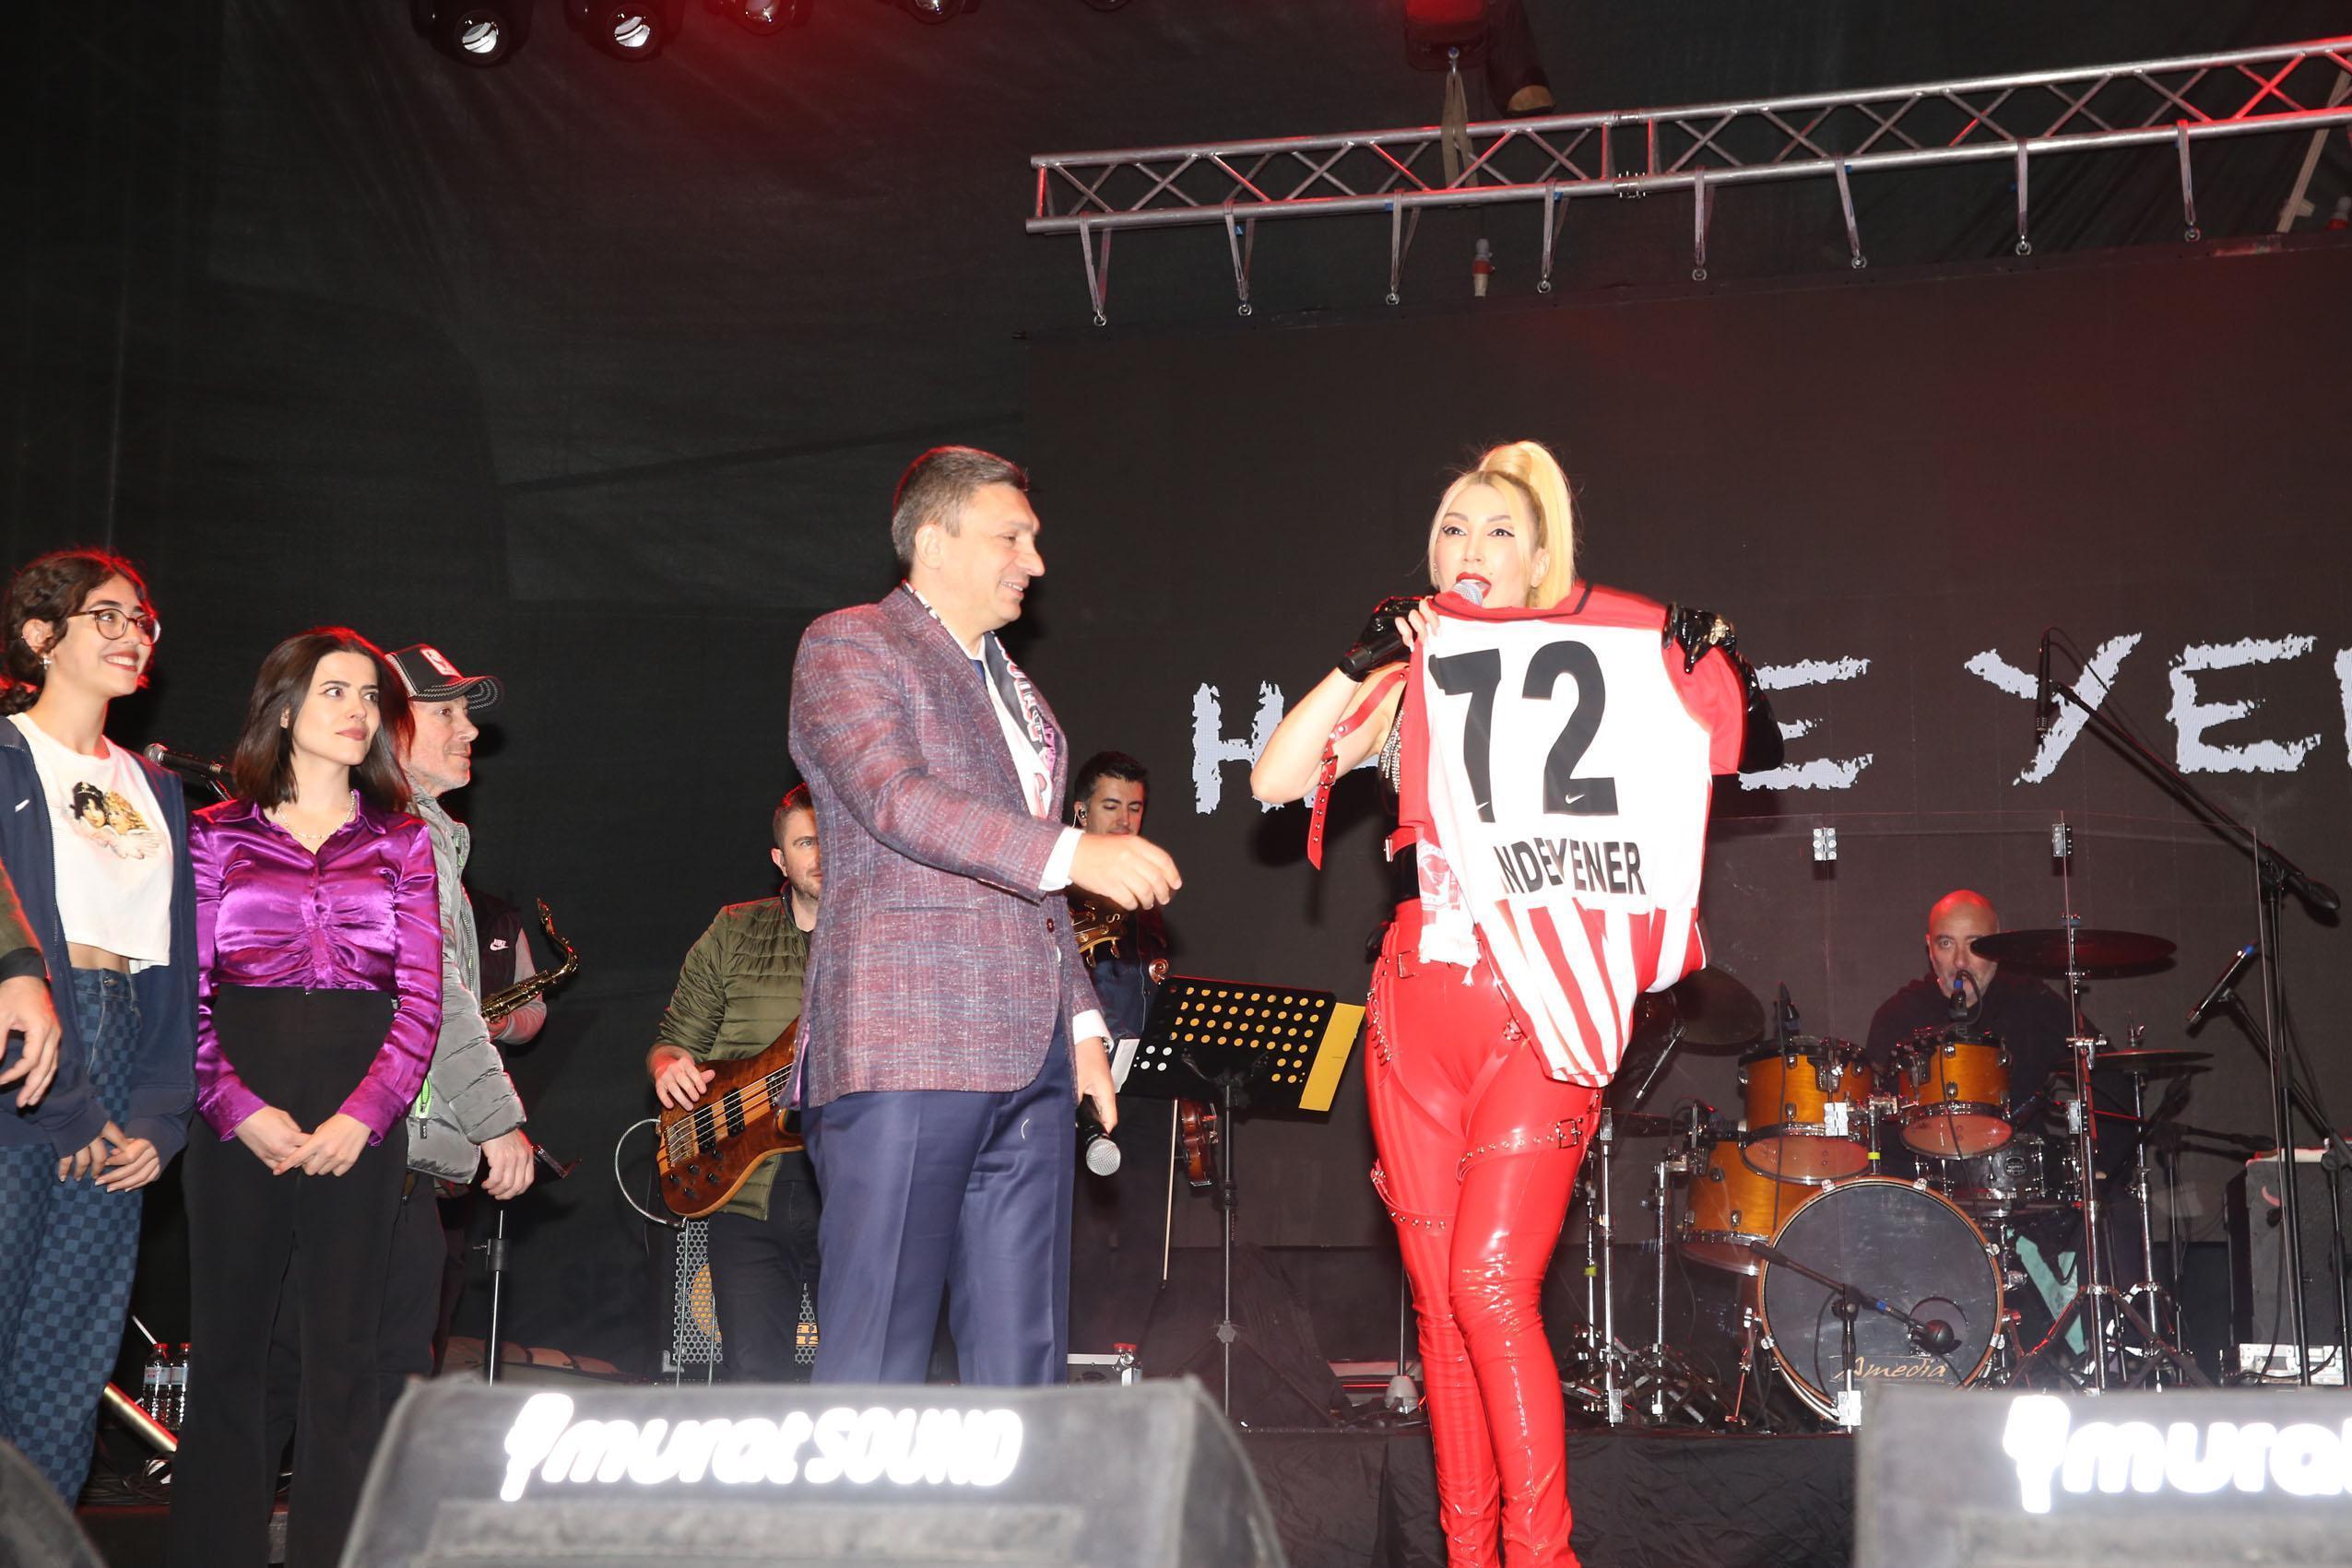 Batman Petrolspor şampiyonluğu Hande Yener konseriyle kutladı